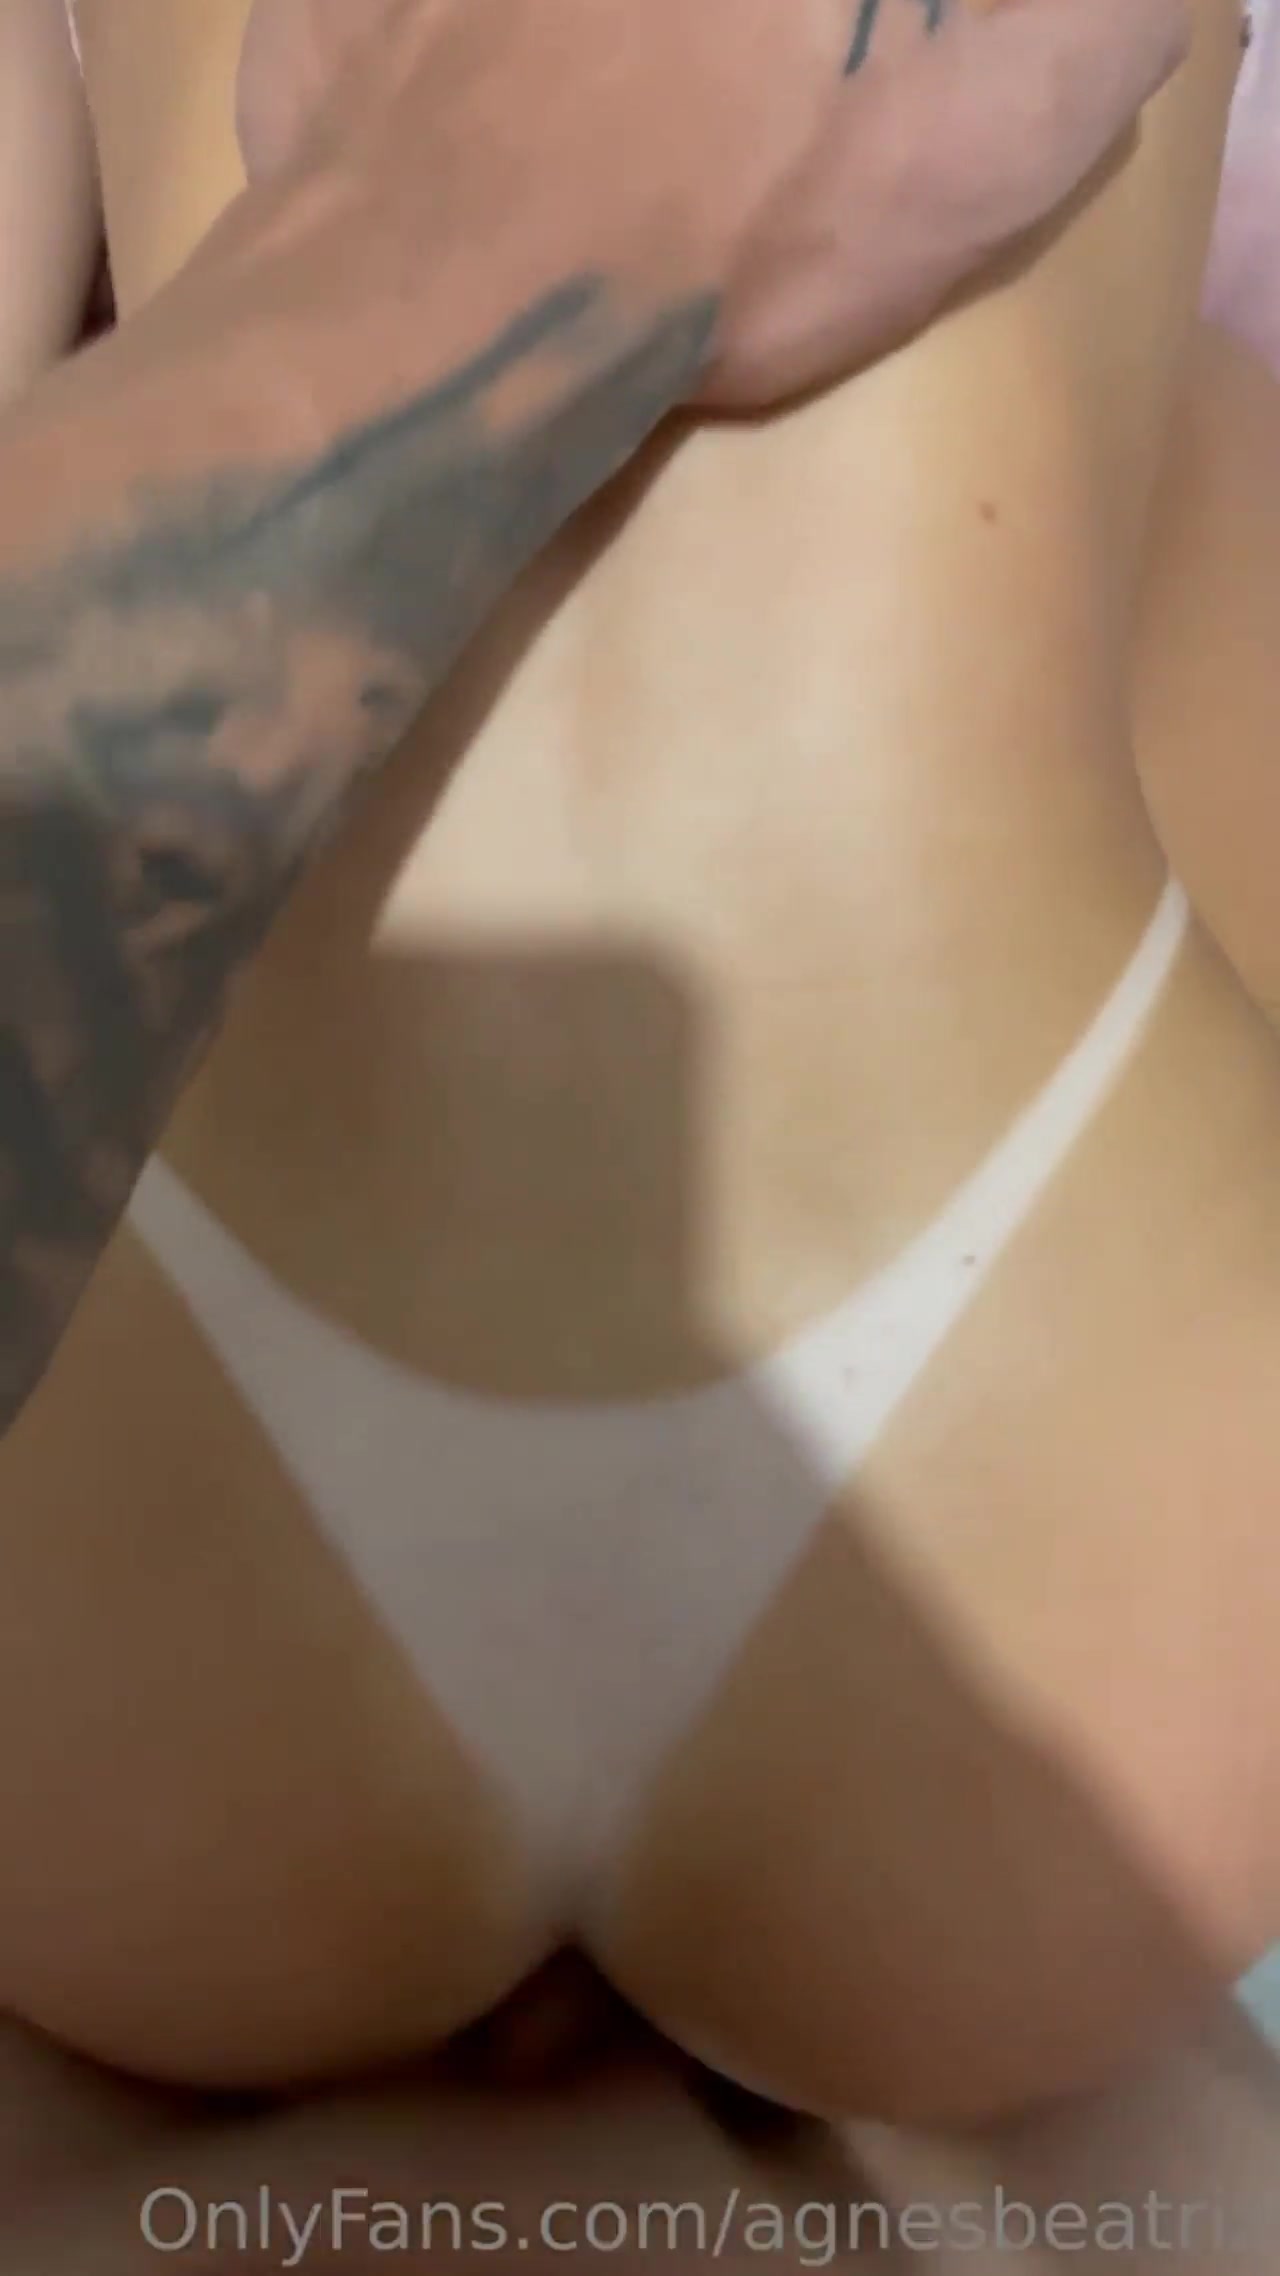 xxx Video da Agnes Beatriz com o cuzinho inchado prontinha para receber rola bem fundo na cama mulher pelada xvideos